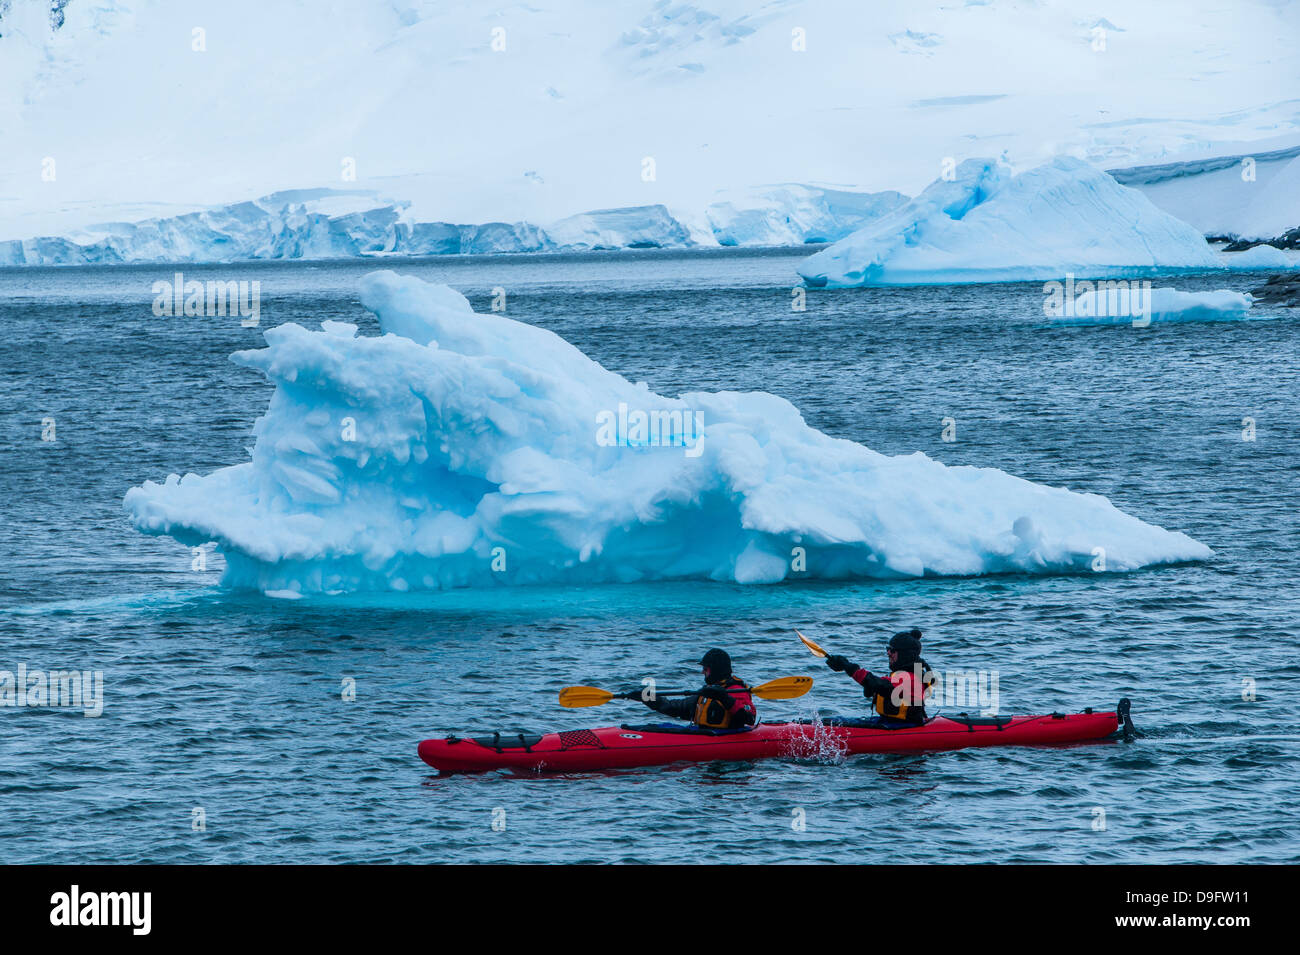 Los palistas remando a través del agua, cerca de la estación de investigación de Puerto Lockroy, La Antártica, regiones polares Foto de stock